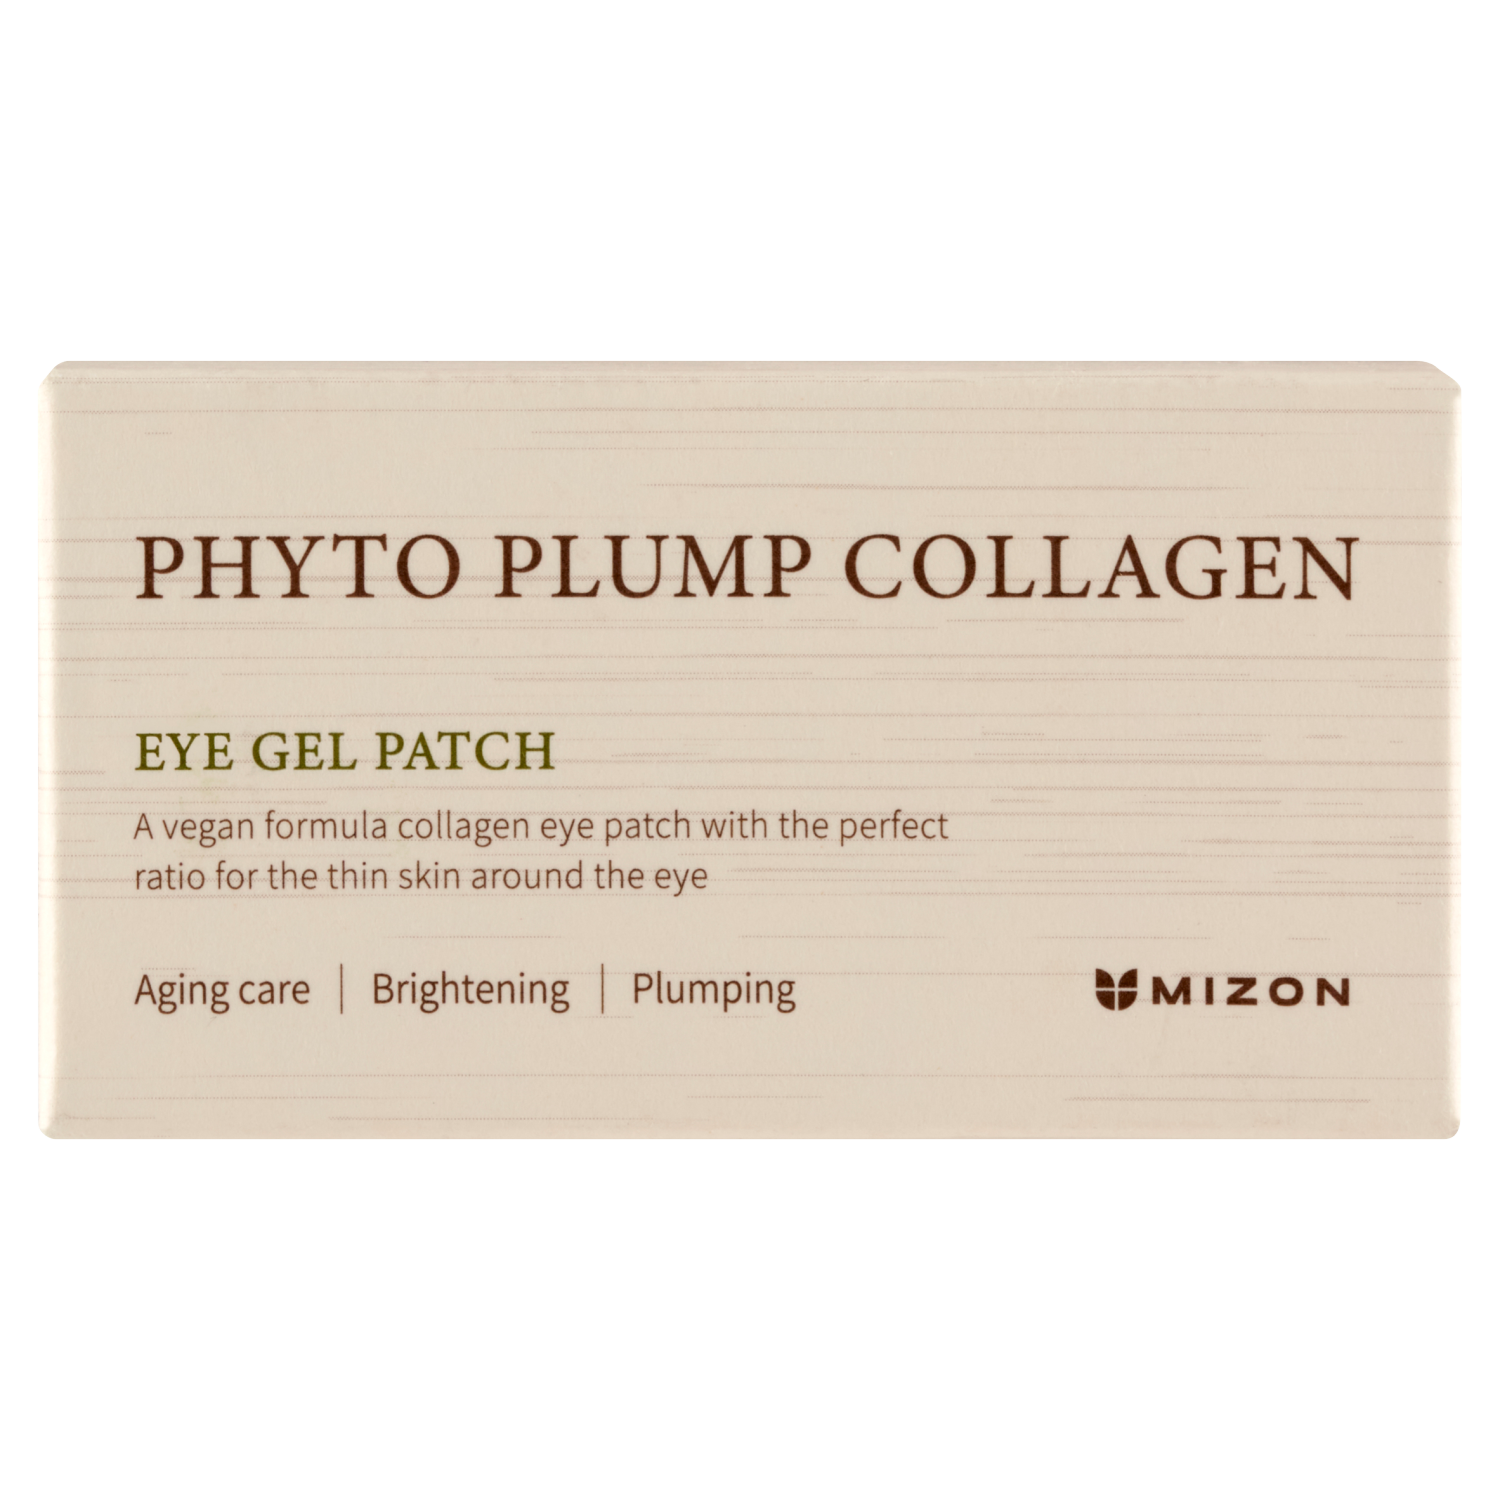 Лифтинг-патчи для глаз Mizon Phyto Plump Collagen, 60 штук патчи для глаз увлажняющие с коллагеном и гиалуроновой кислотой hyaluronic acid